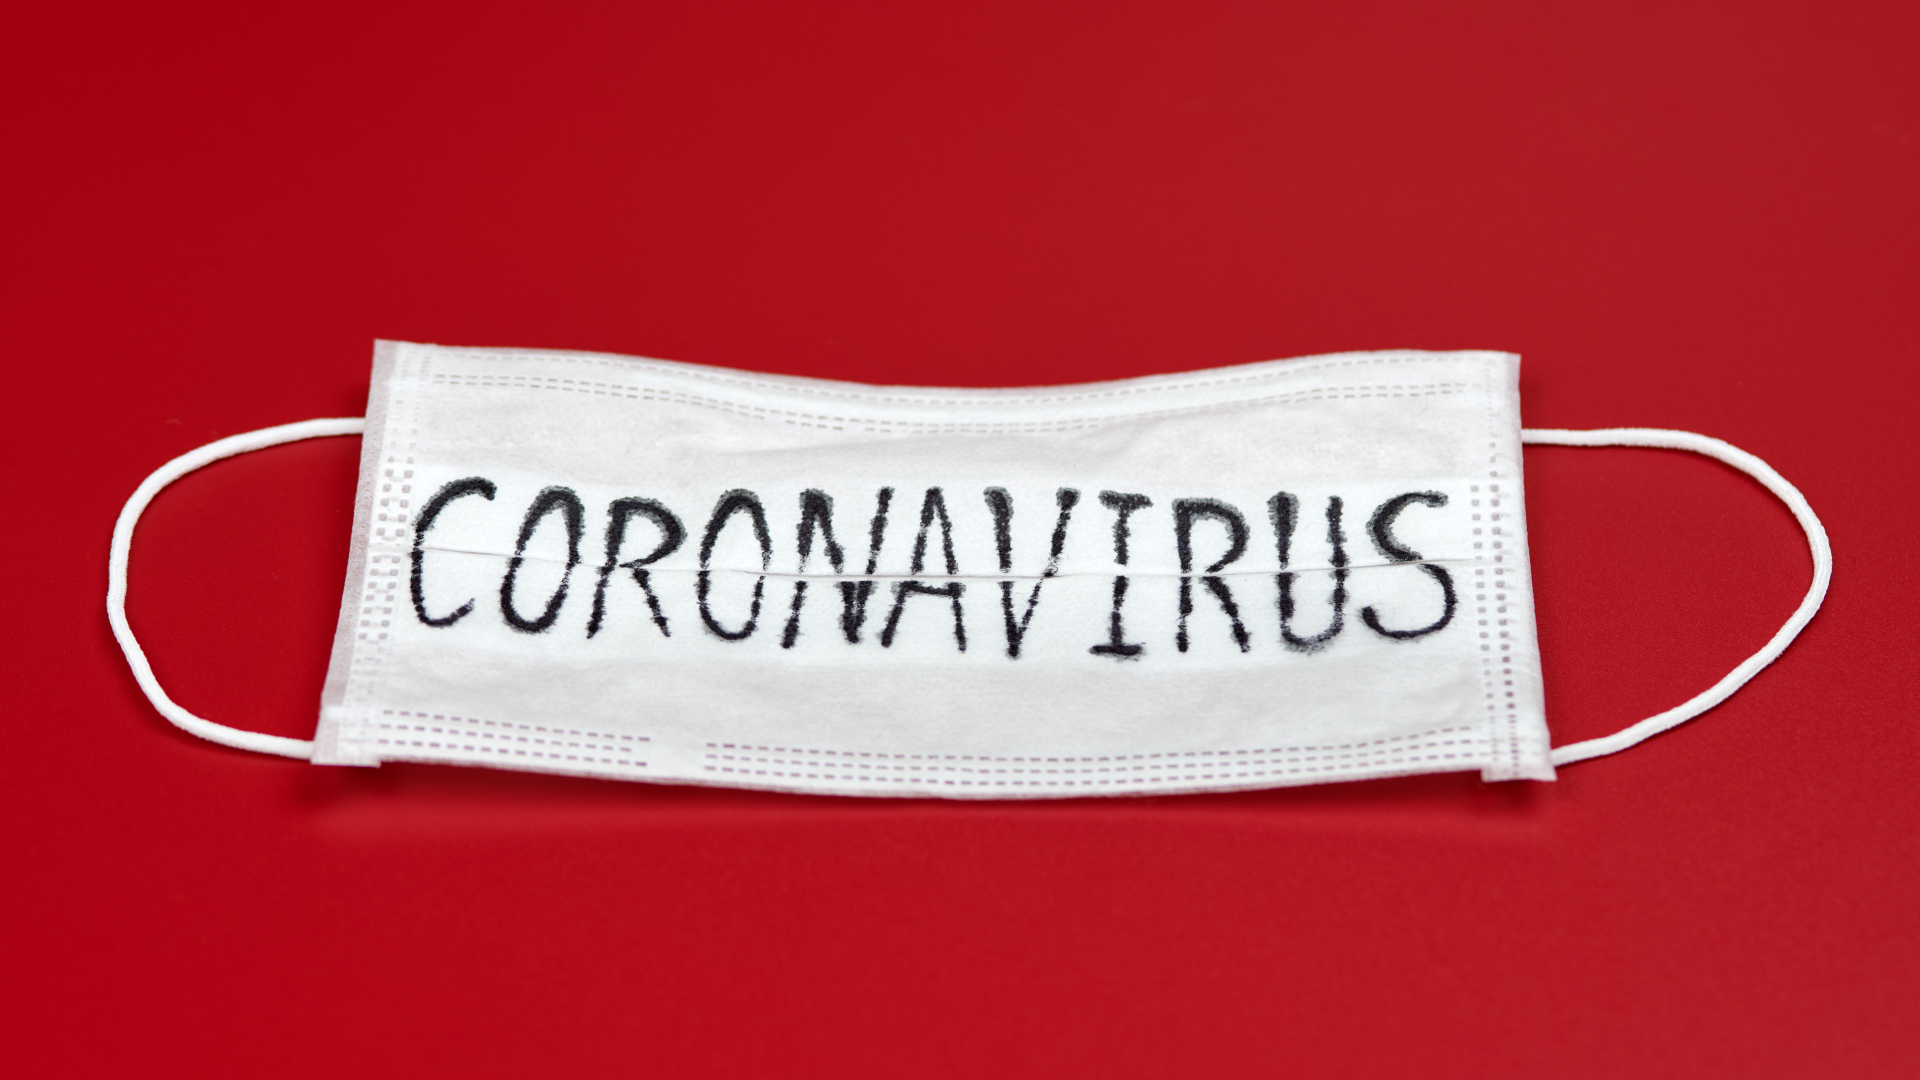 Медицинская маска с надписью коронавирус Covid-19 на красном фоне